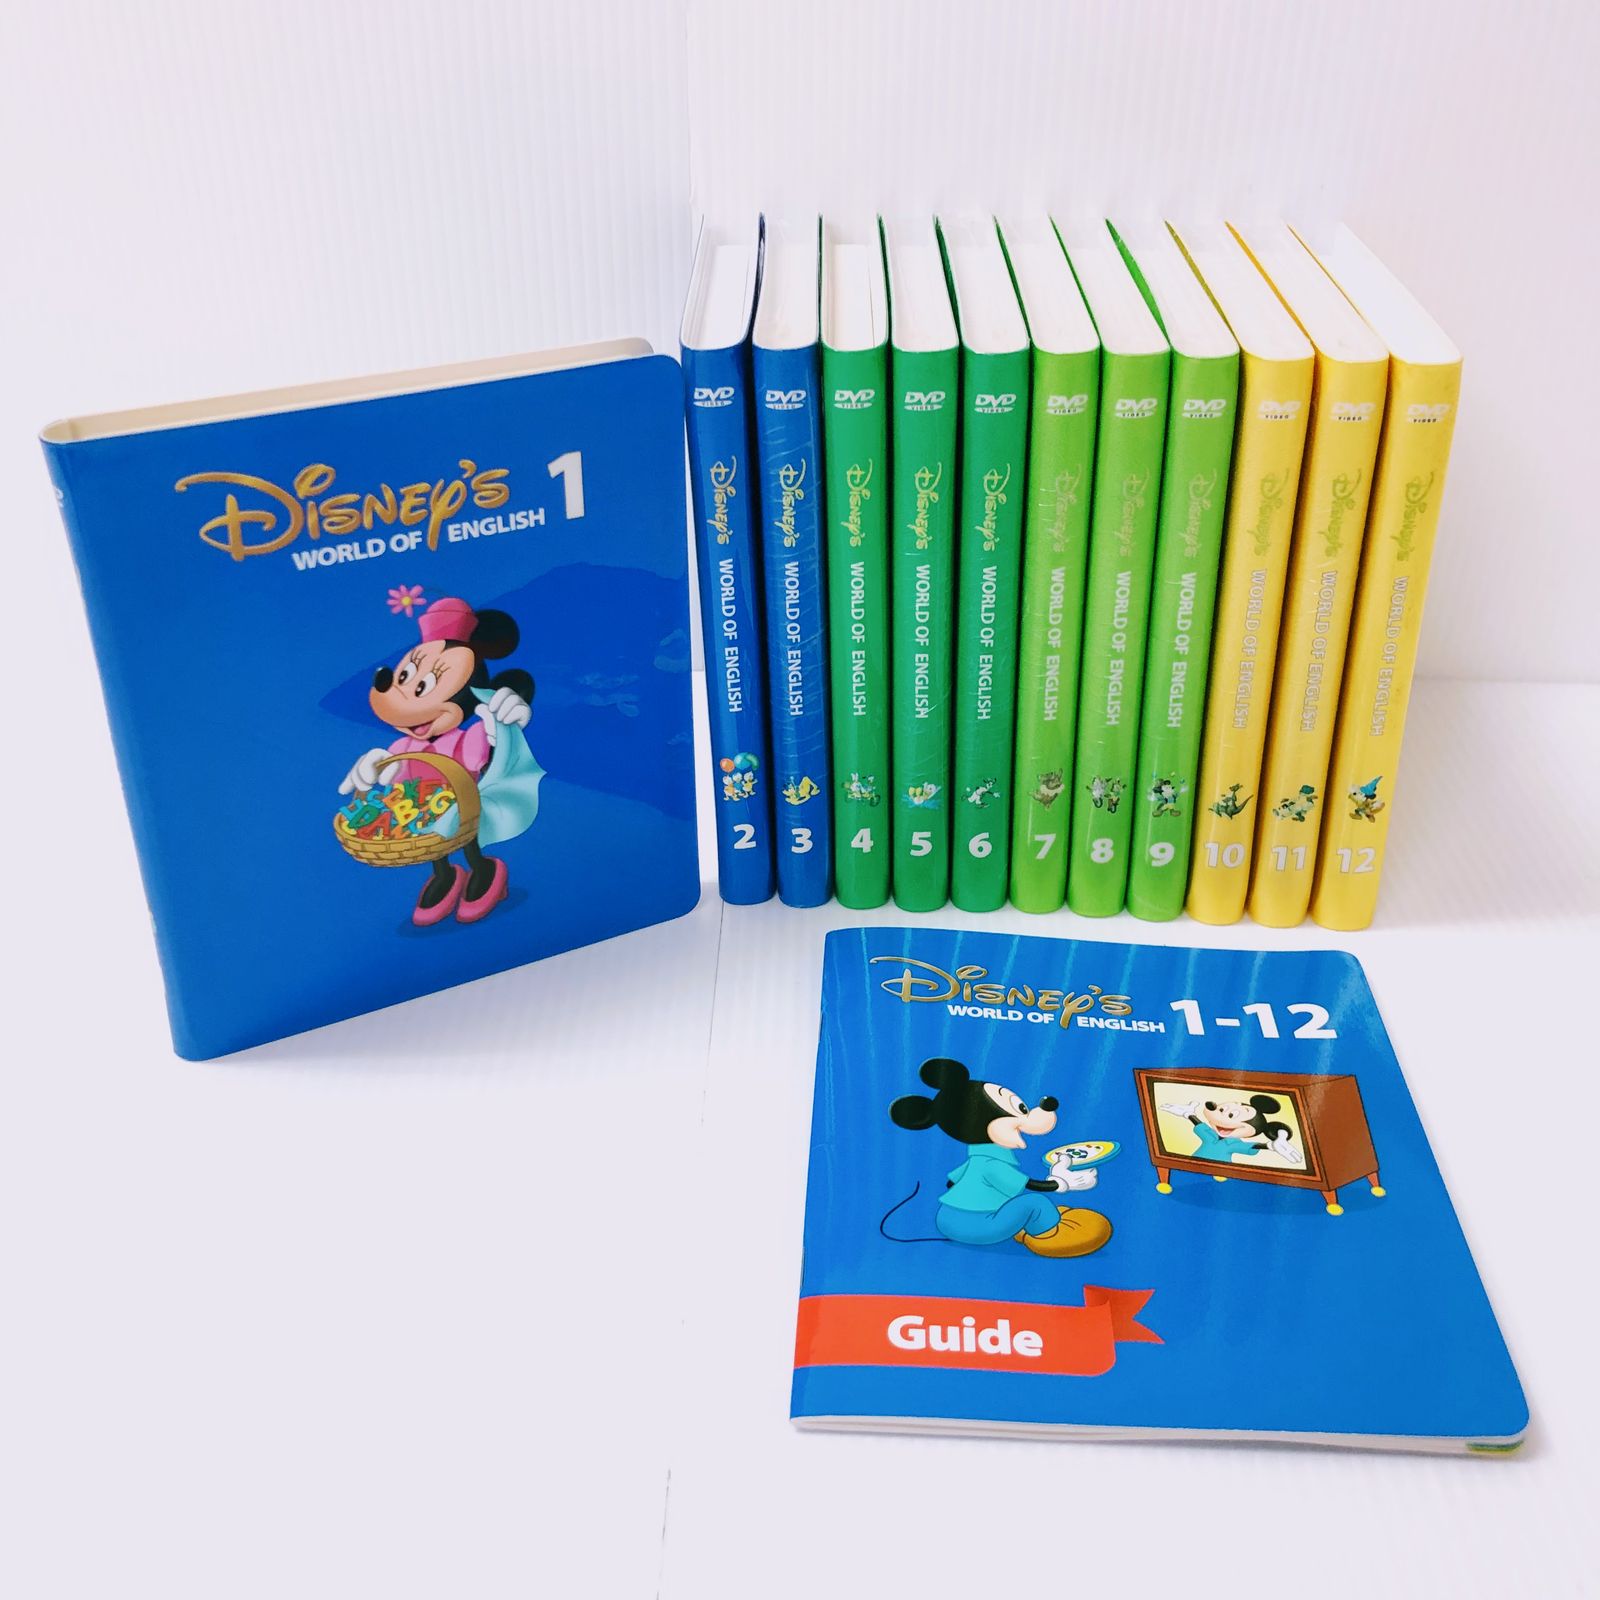 ディズニー英語システム ストレートプレイ DVD 旧子役 字幕有 2012年